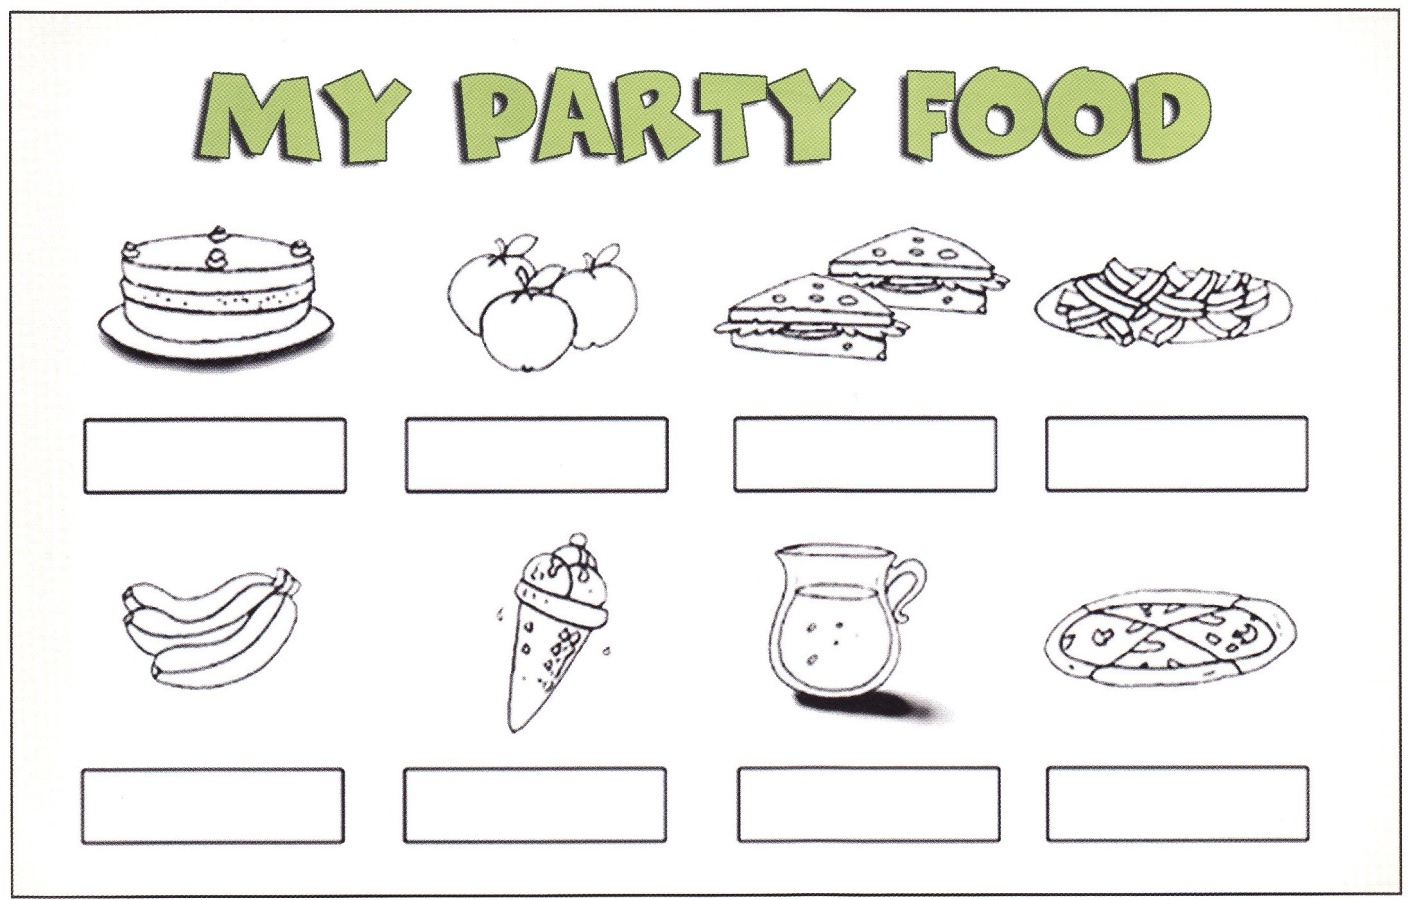 Методическая разработка Party Food